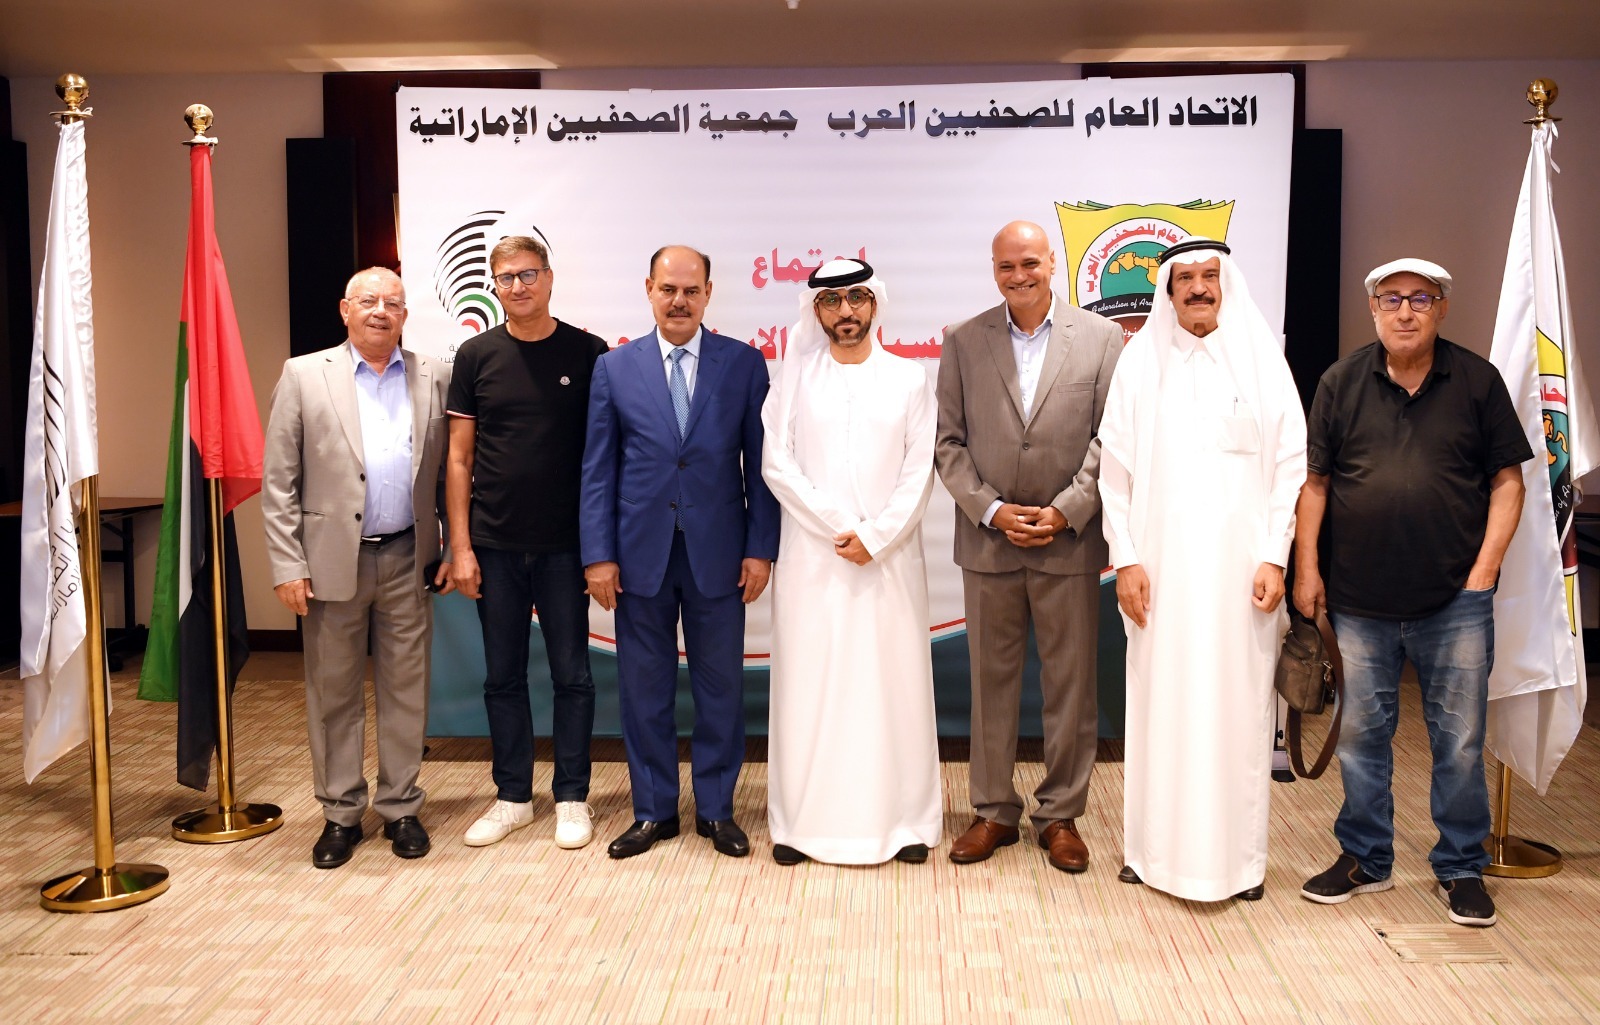 دبي تشهد اجتماع لجنة السياسات الاستراتيجية لبحث سبل تطوير اتحاد الصحفيين العرب نحو صحافة عربية أكثر تطوراً، ومواكبةً للمستقبل